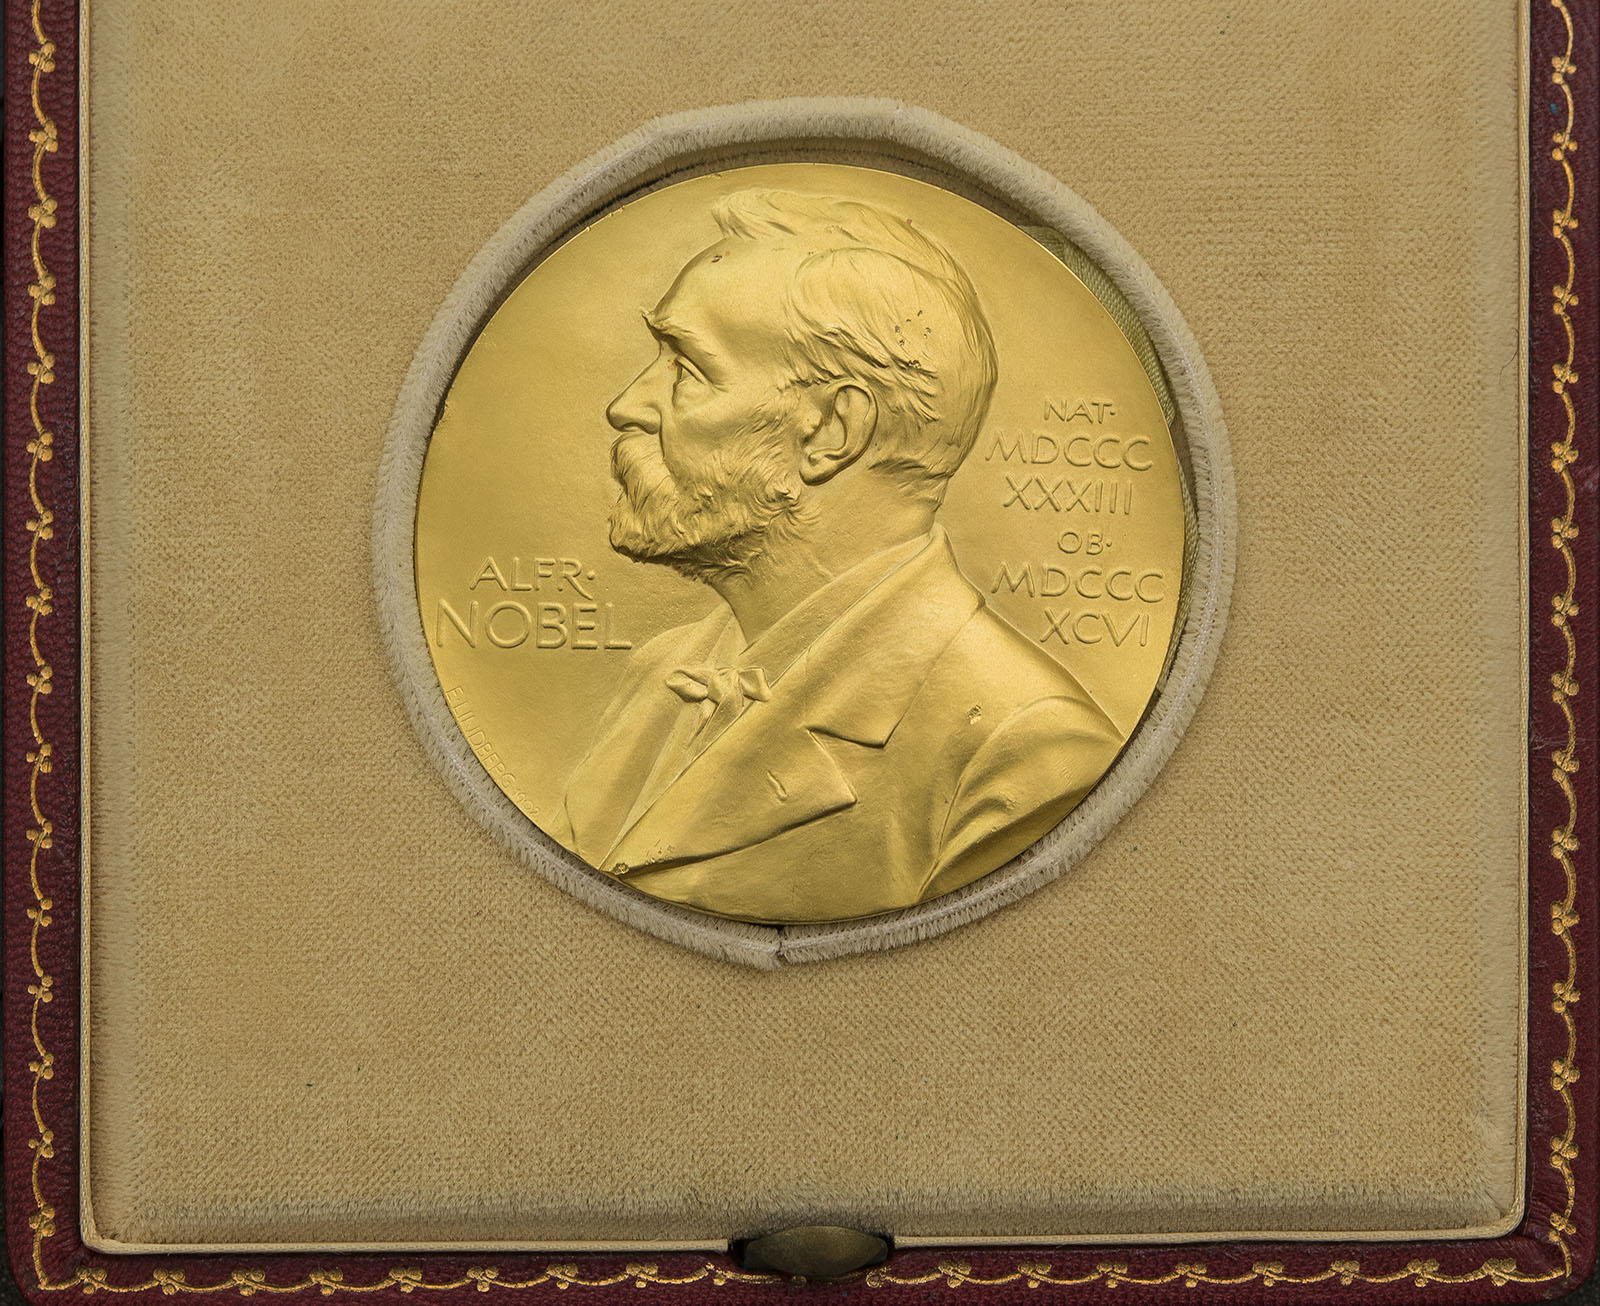 A Nobel Prize Medal in a velvet case.